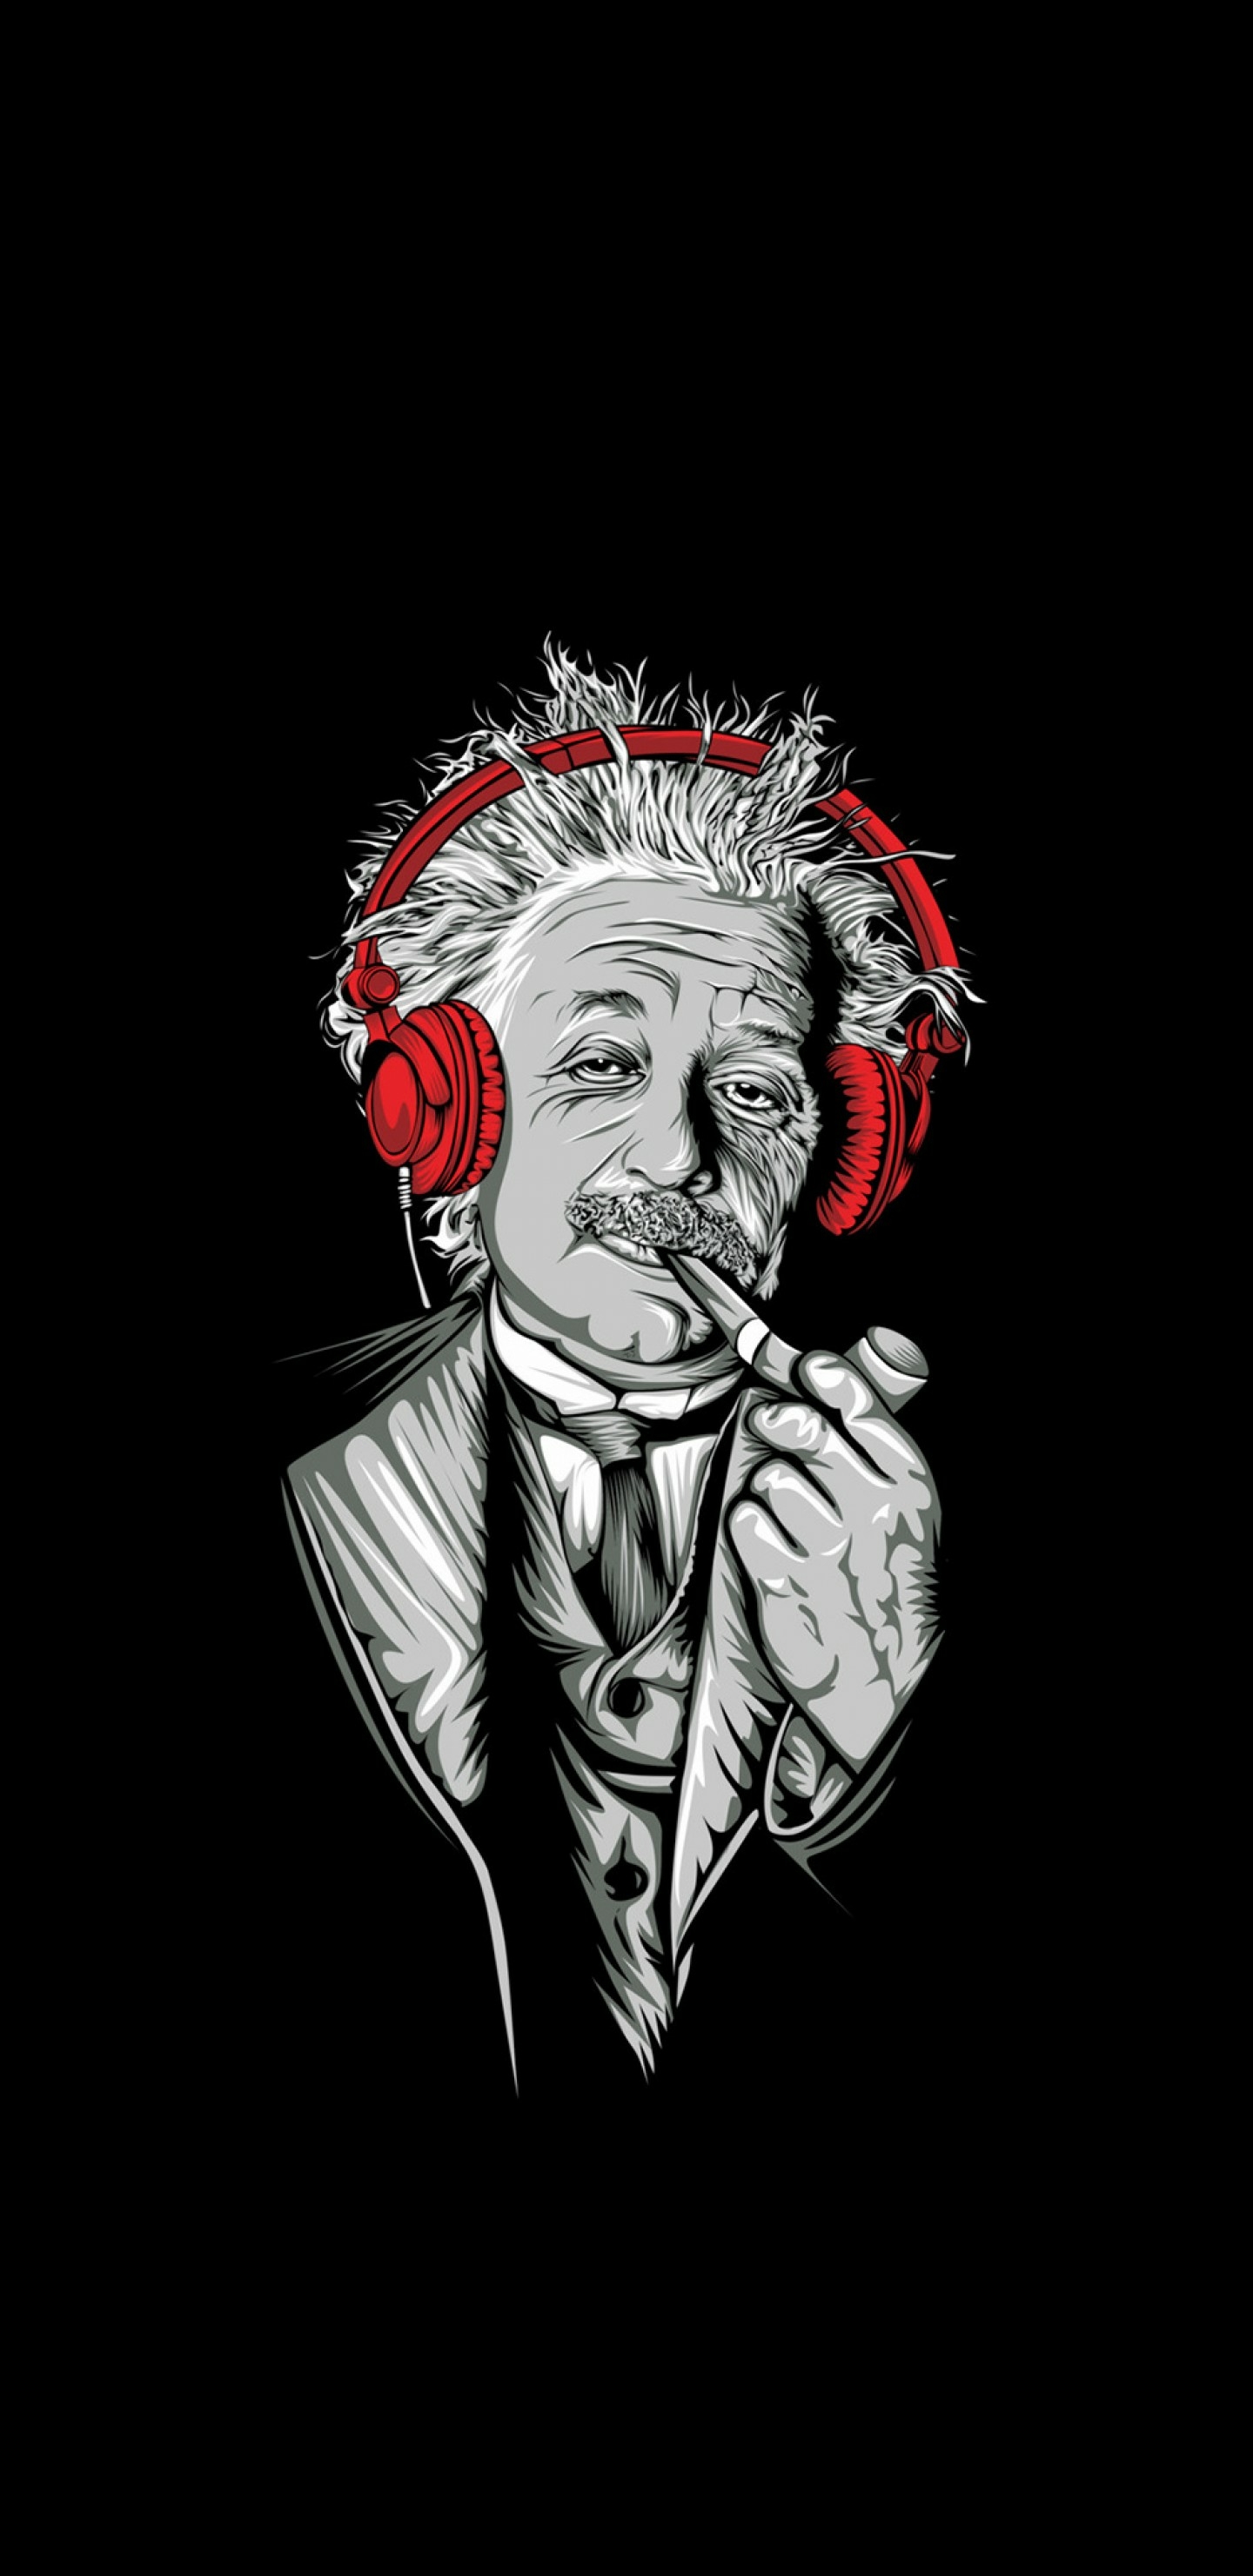 爱因斯坦也喜欢音乐吗？